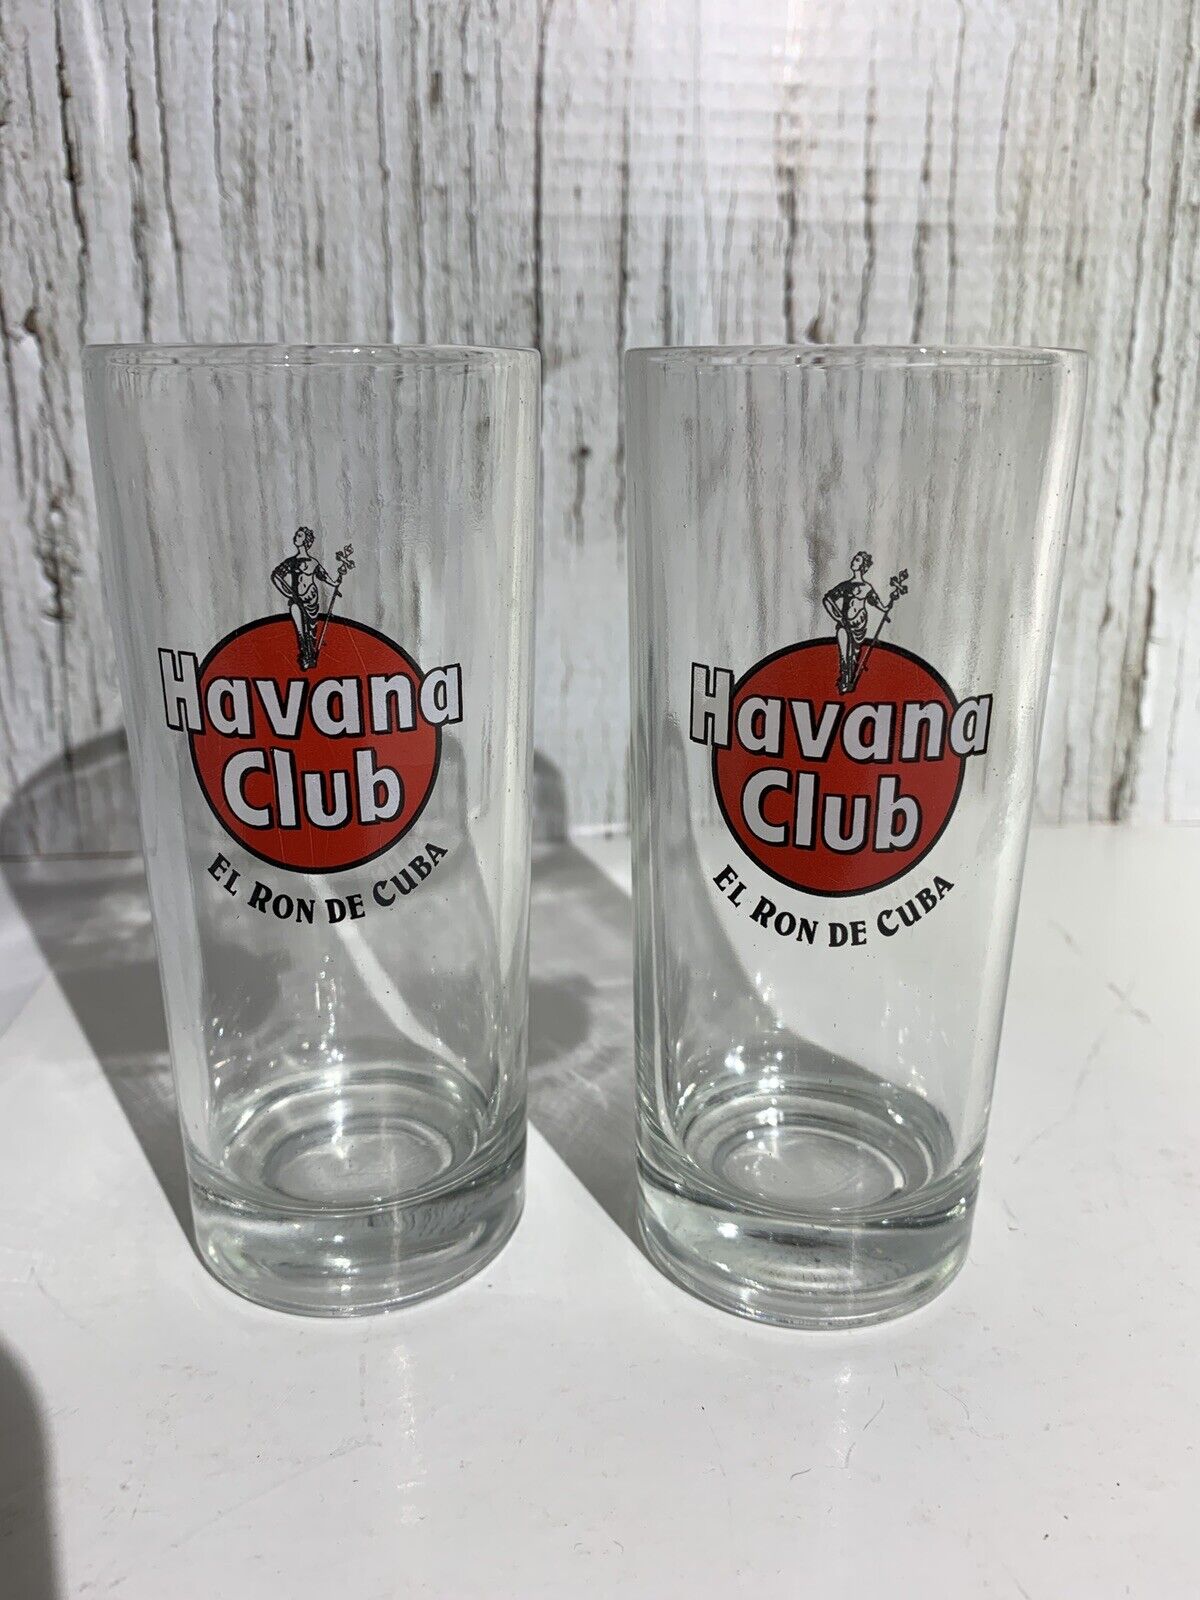 2 Vintage Havana Club EL RON DE CUBA Drinking Glasses Cuba Libre Rum Glasses